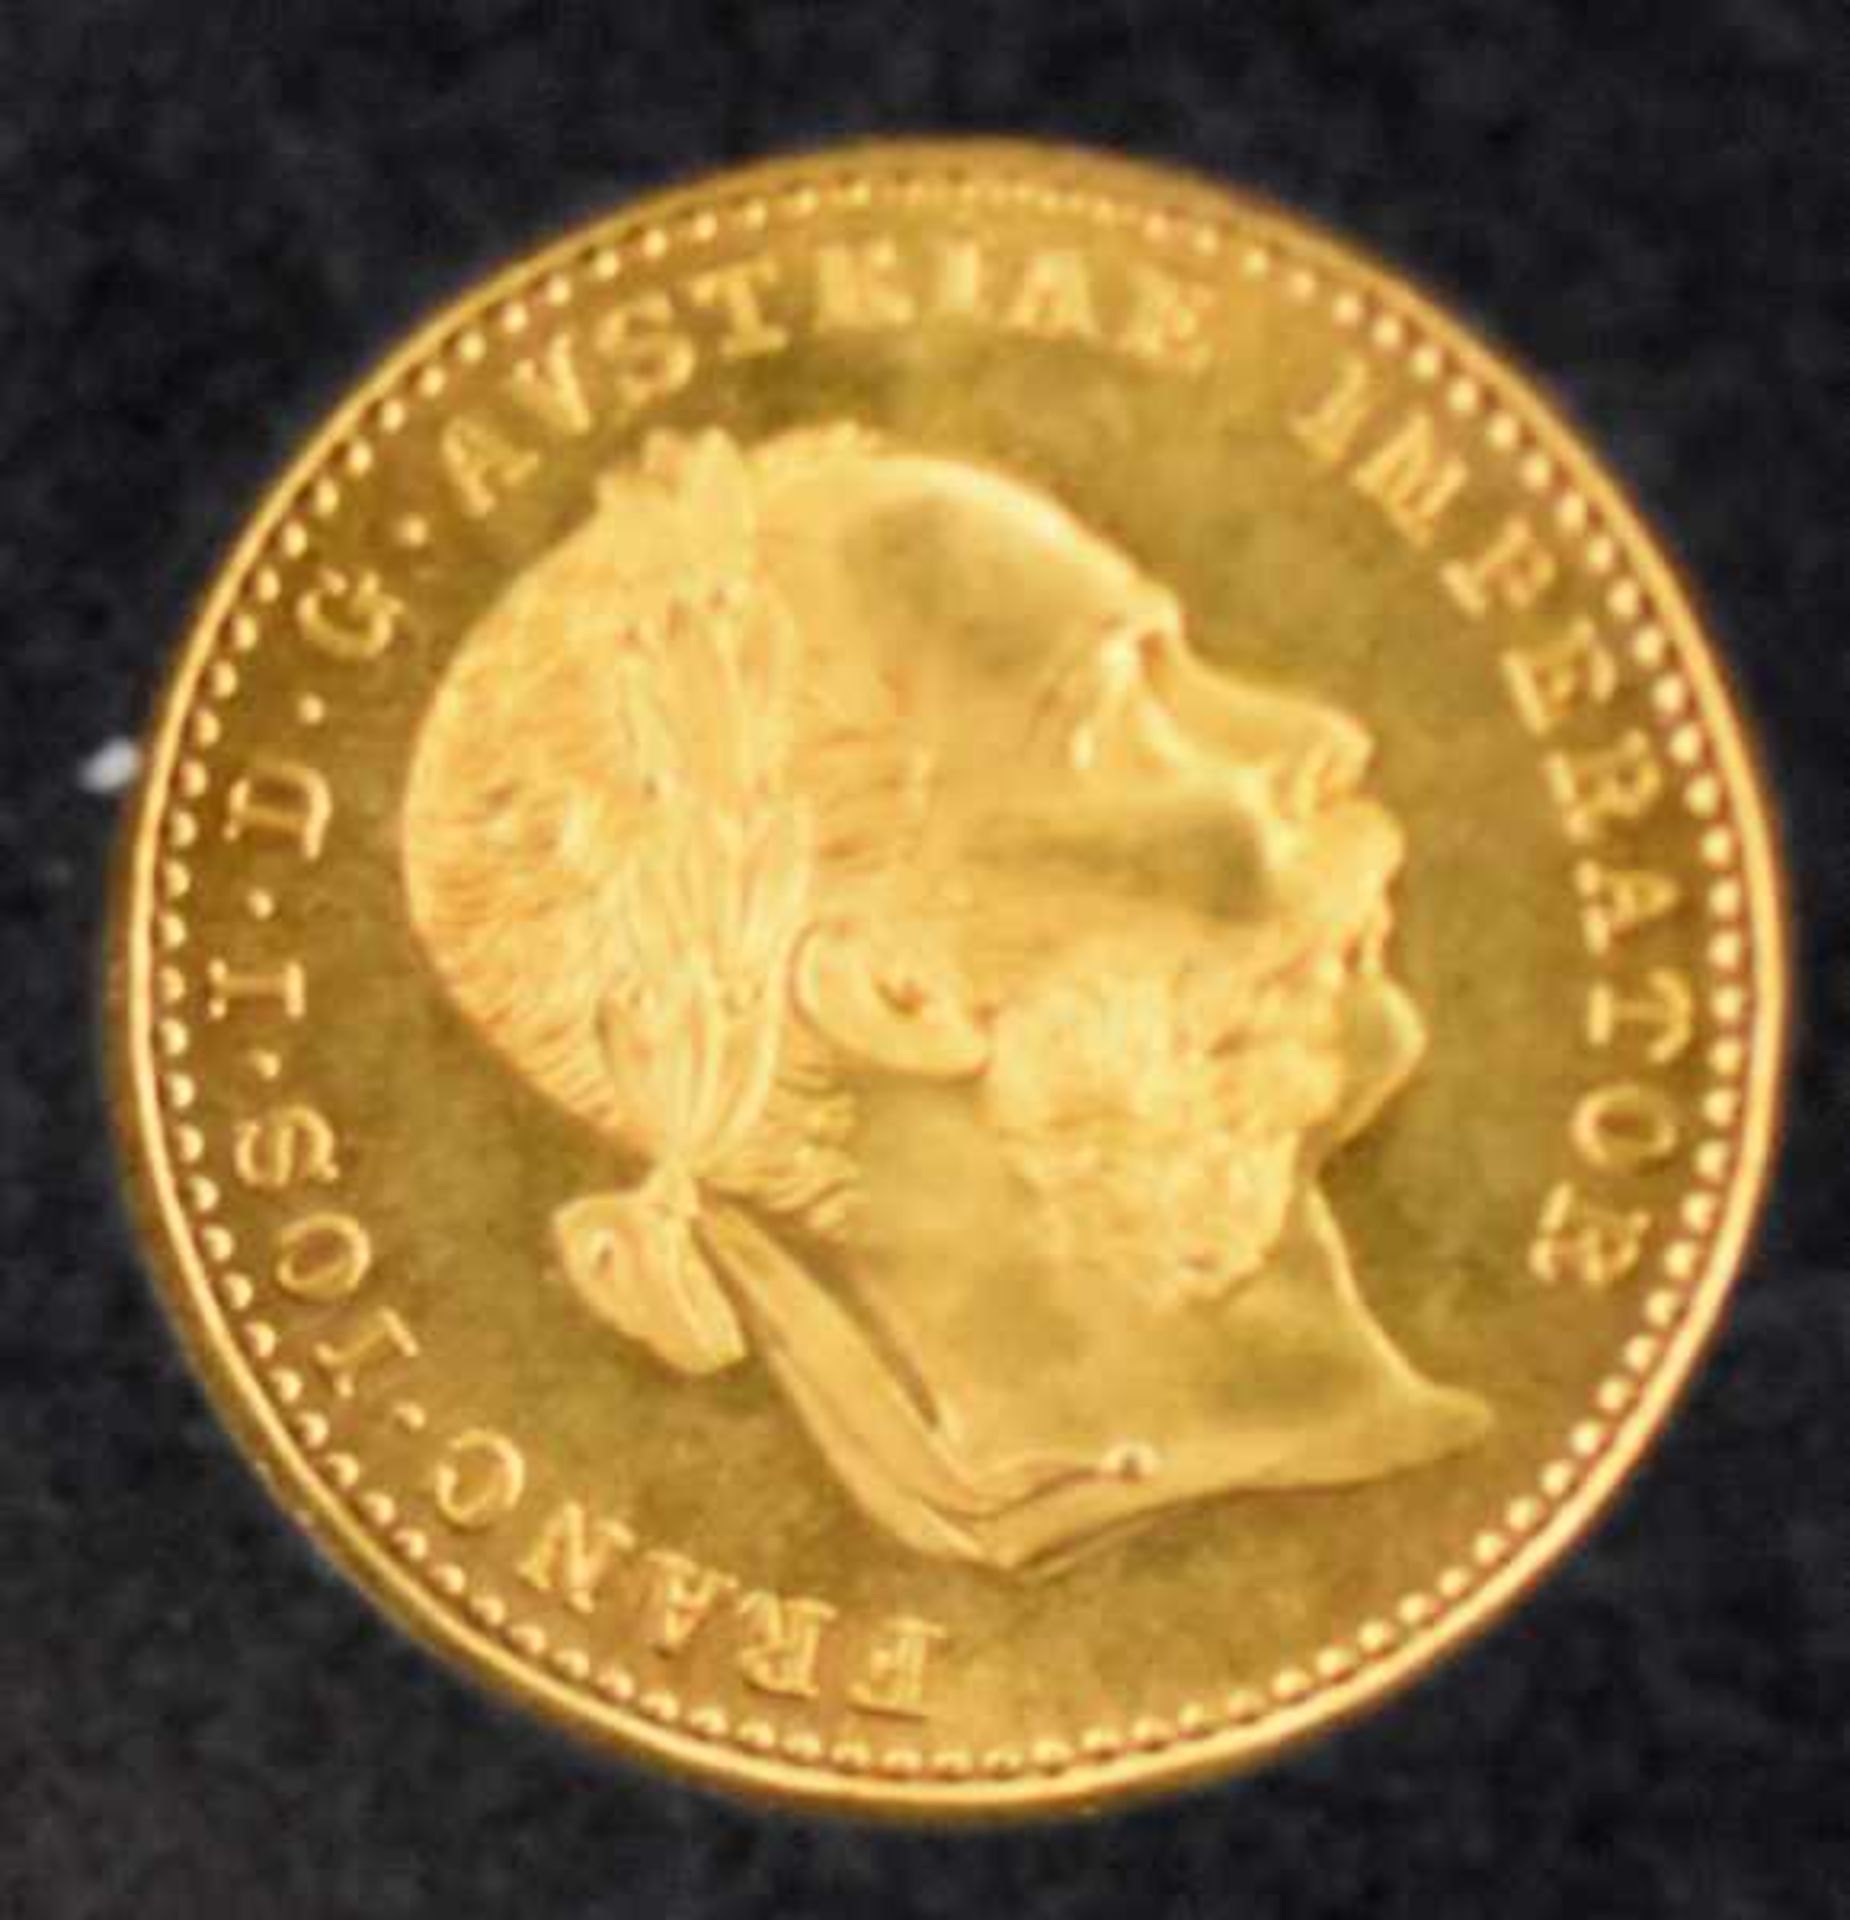 5 GOLDMÜNZEN Kaiserreich, Neuprägung, je 10 Goldmark (5 aus einem Set), Gold 900/1000, je 3,98gr, - Bild 3 aus 4